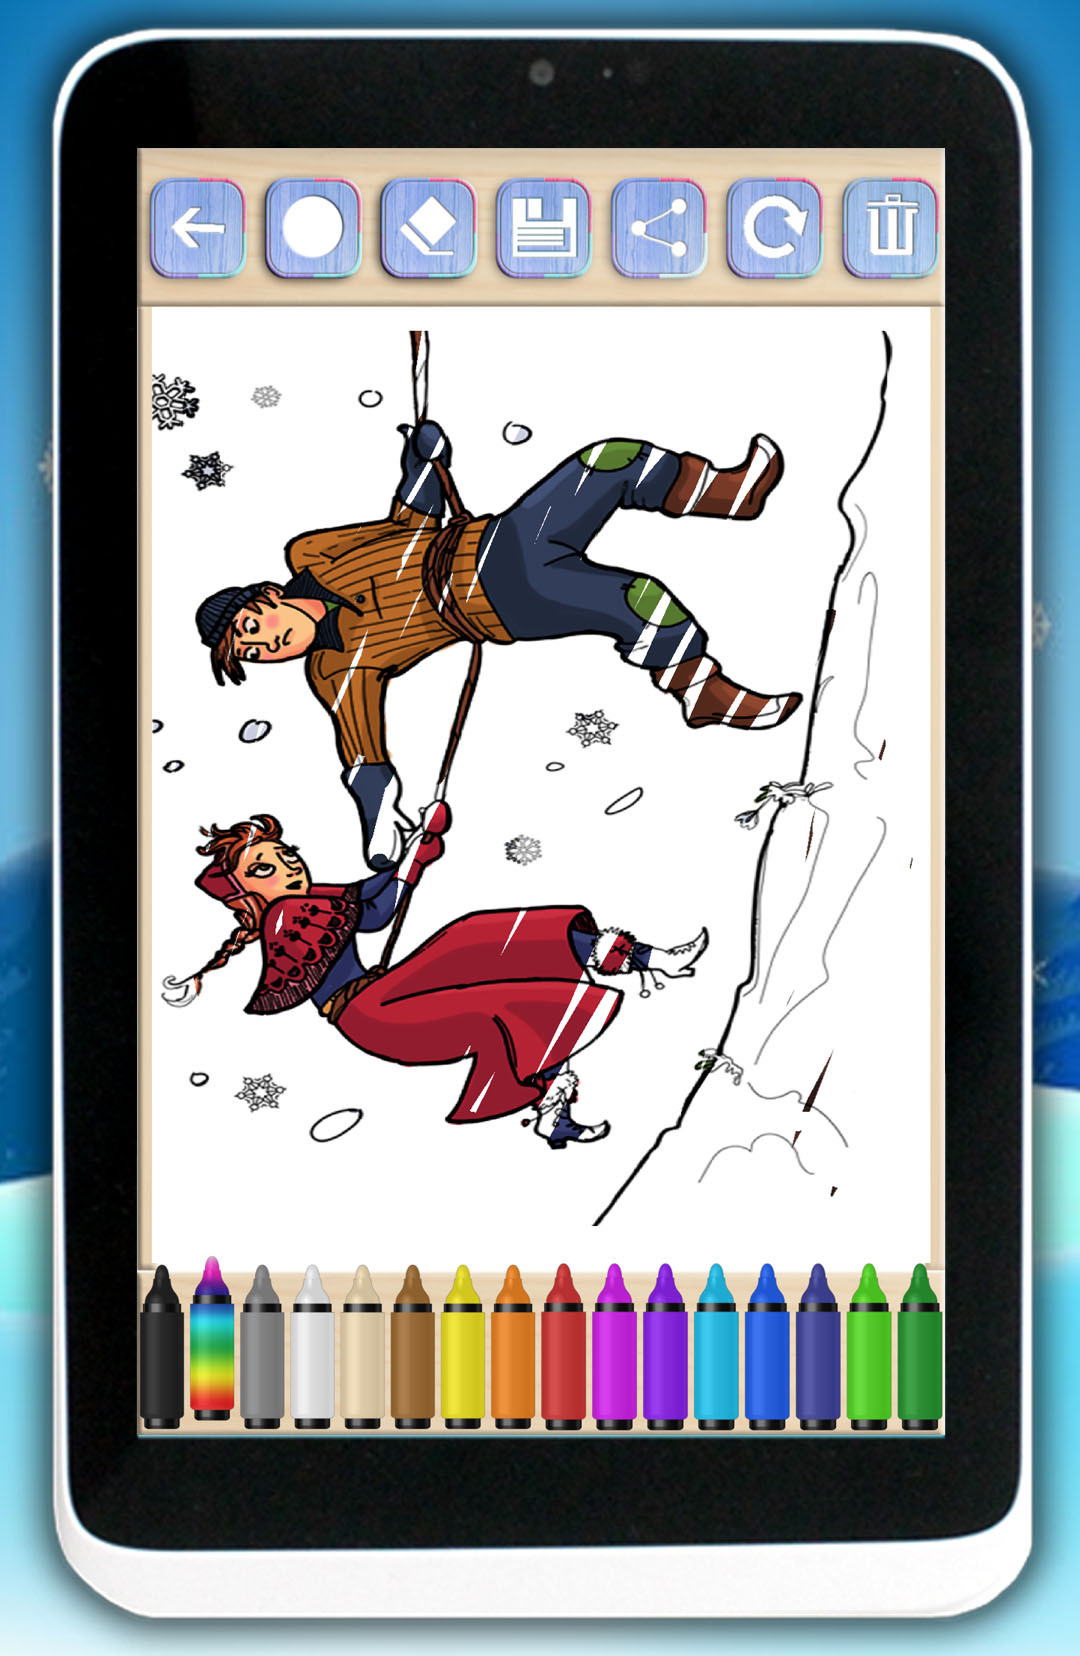 儿童画画游戏:冰雪公主截图3